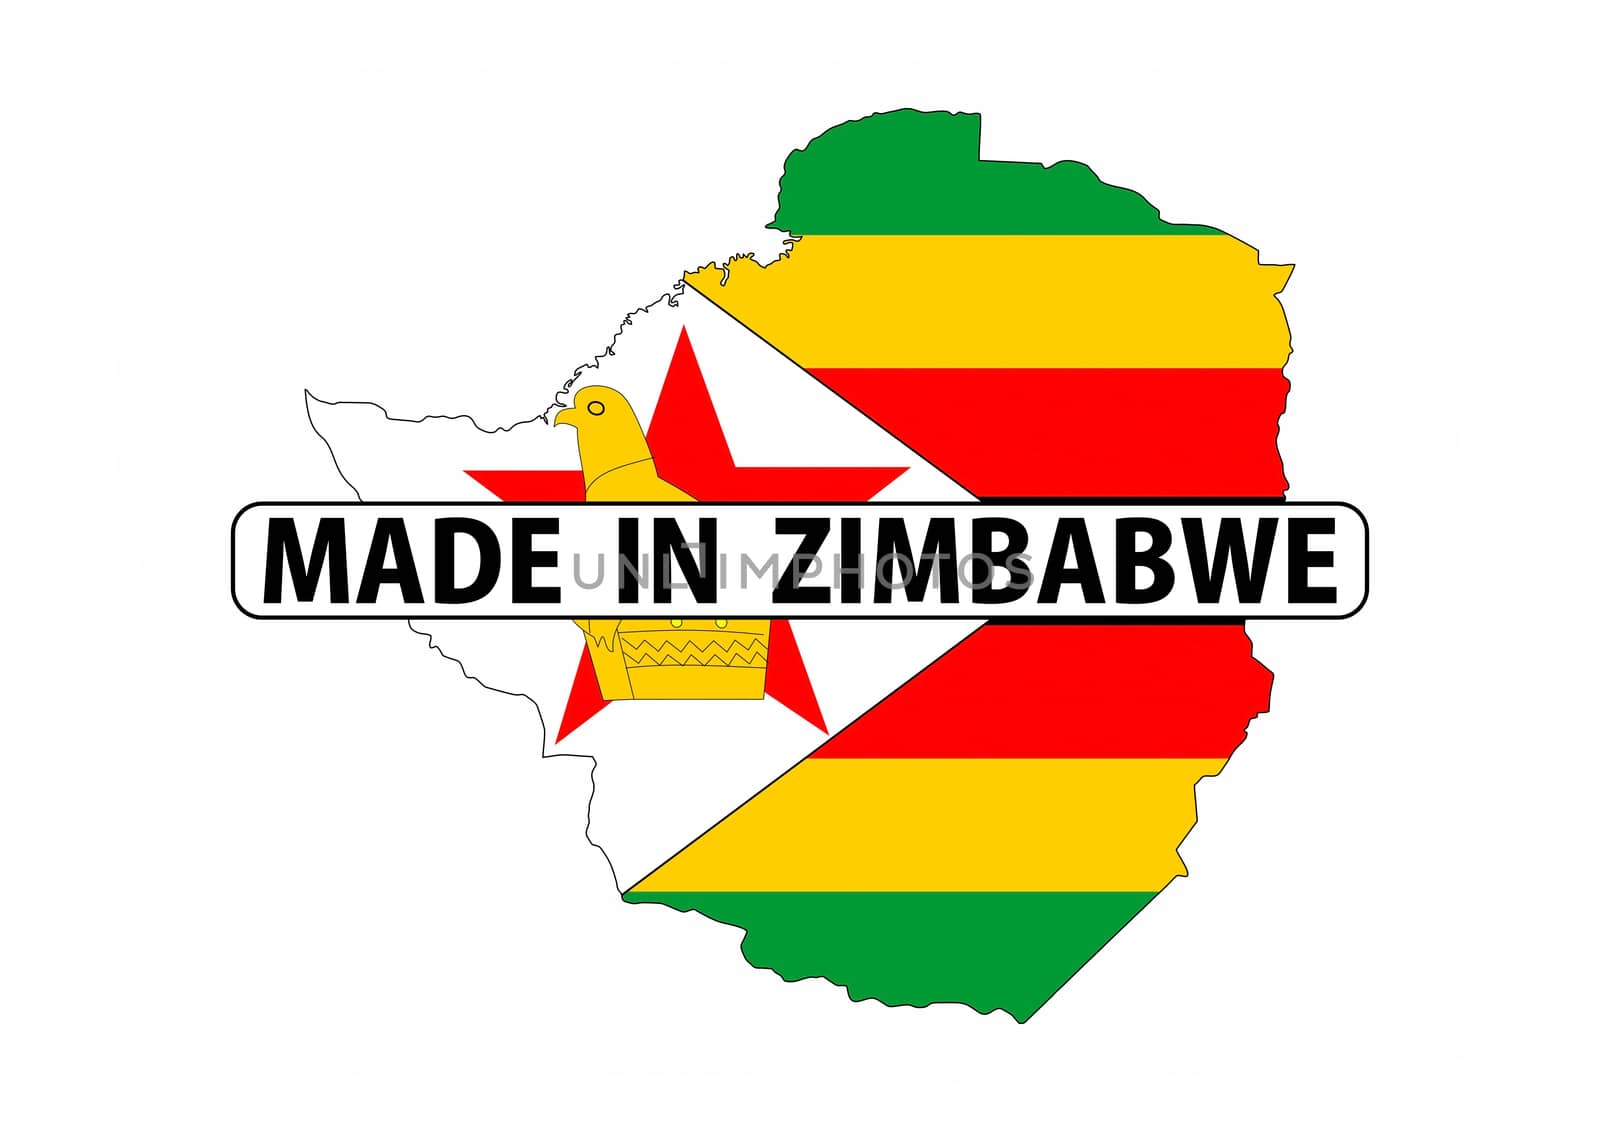 made in zimbabwe by tony4urban